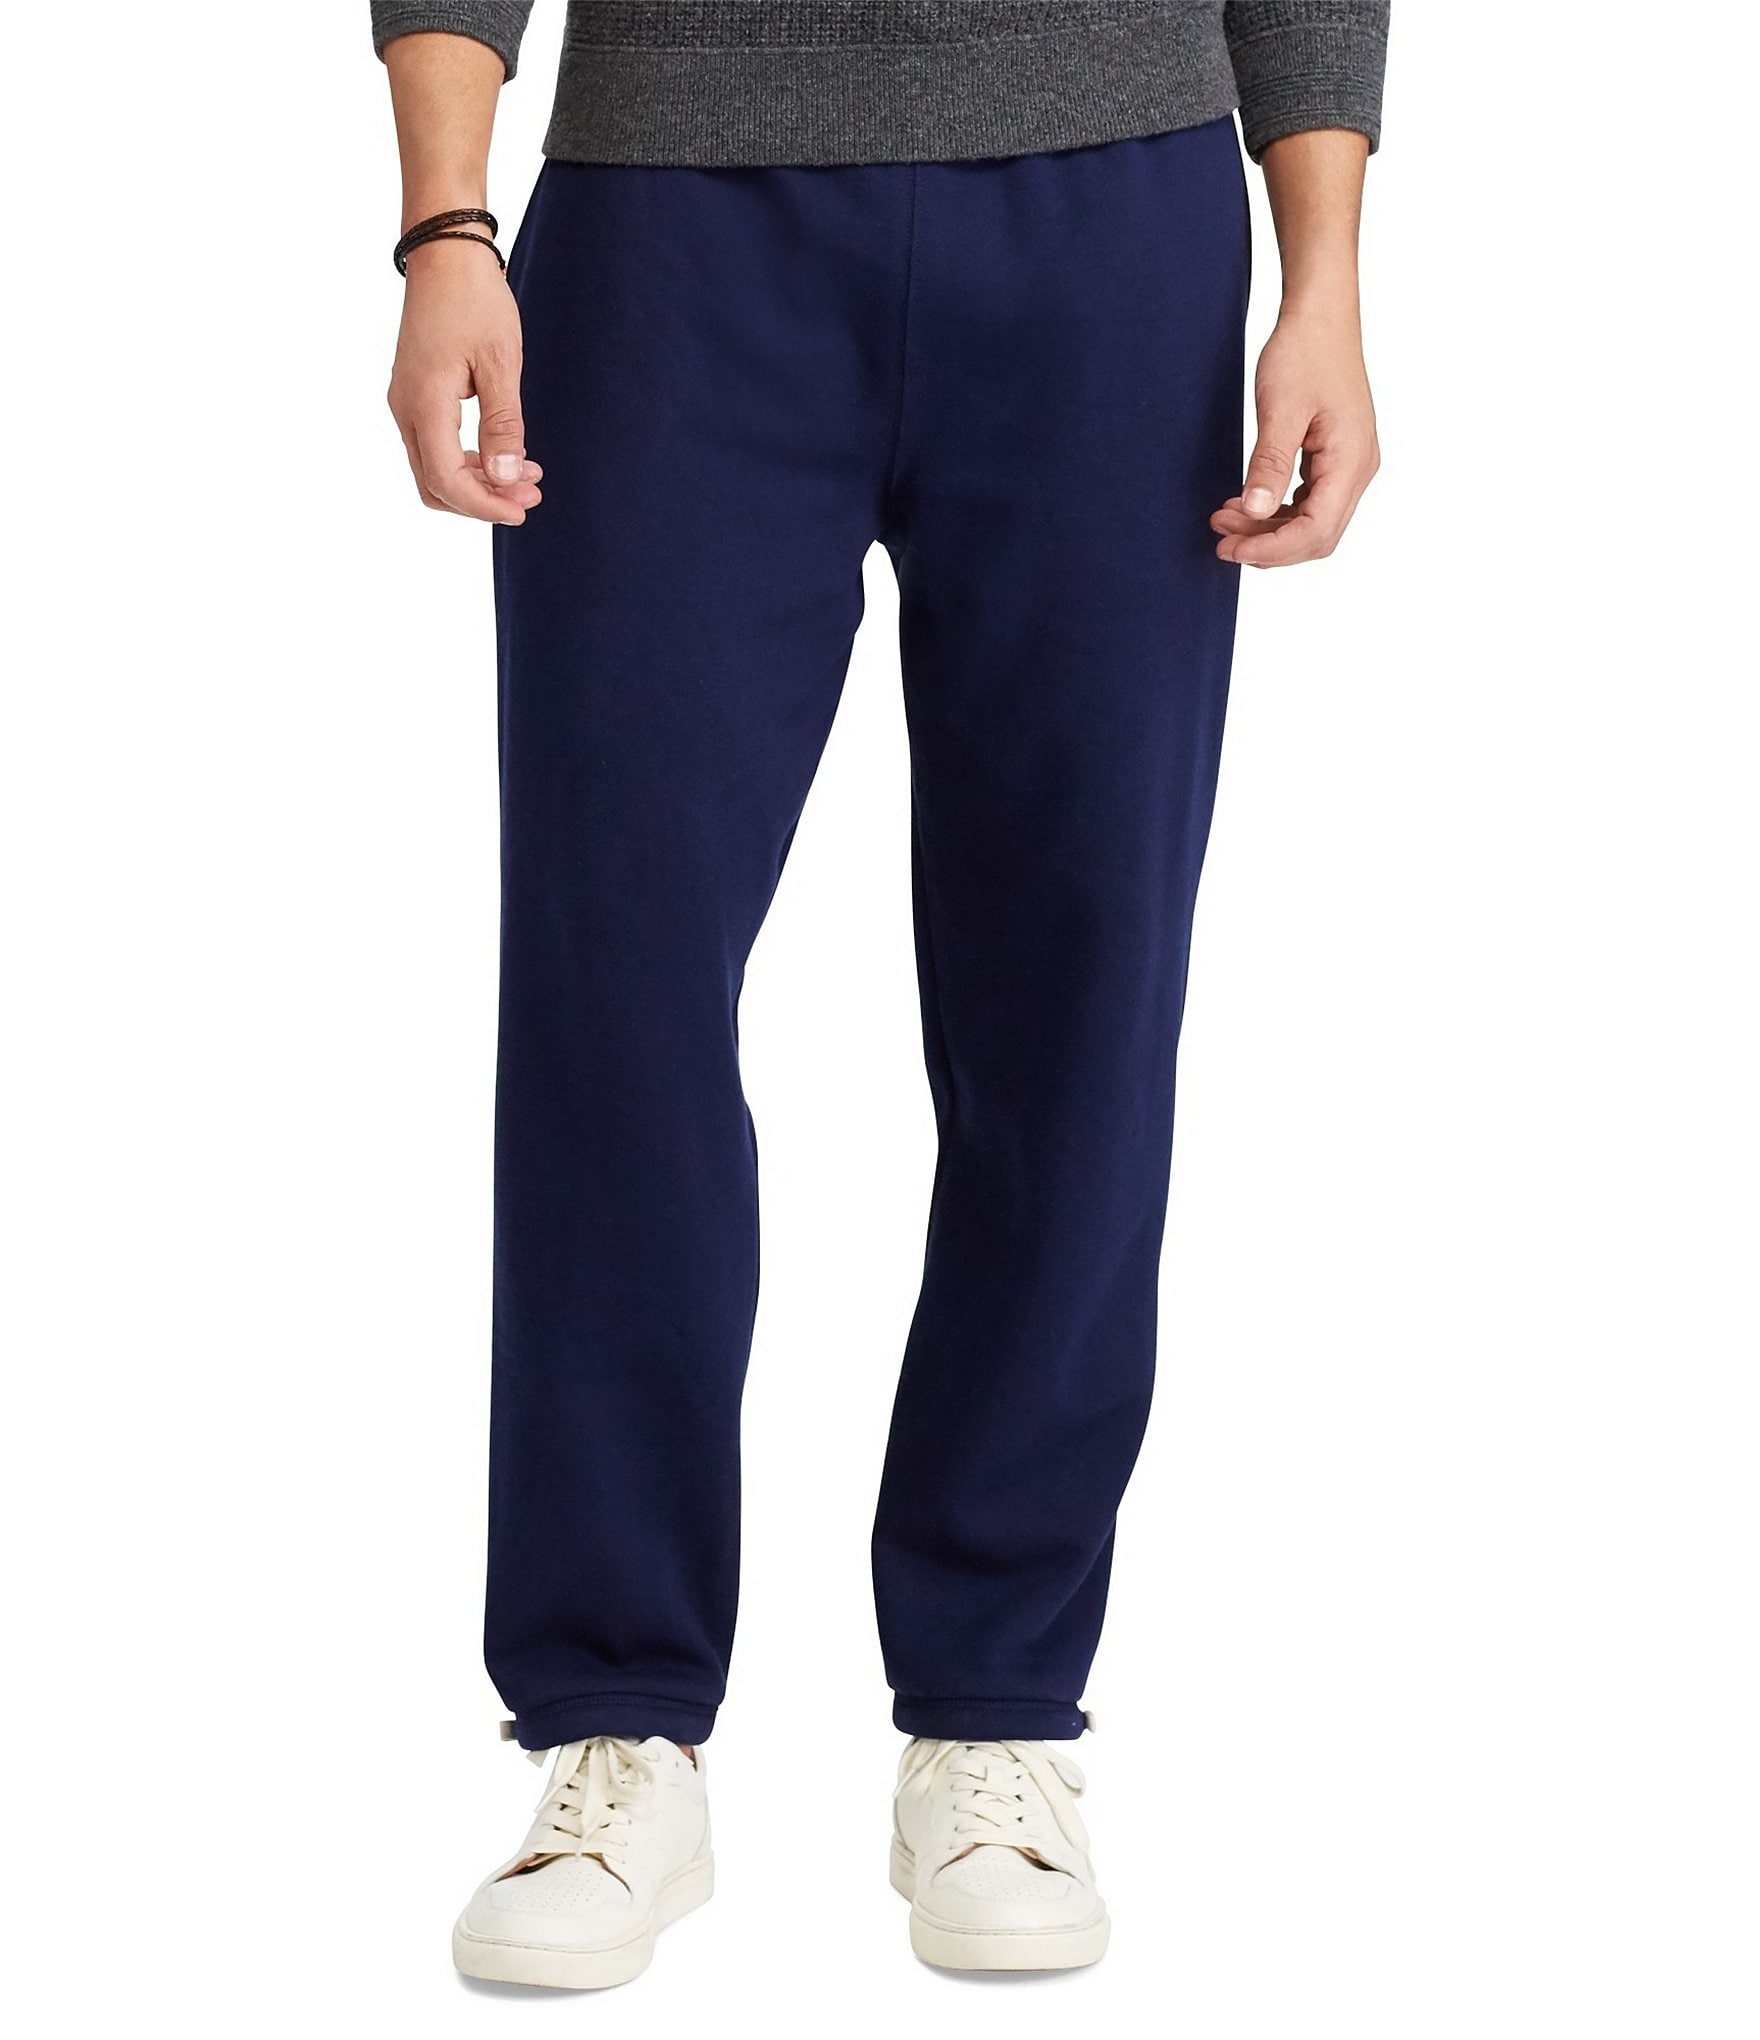 Polo Ralph Lauren Gear Men's Pants Black, Blue, White, Yellow 710923298001